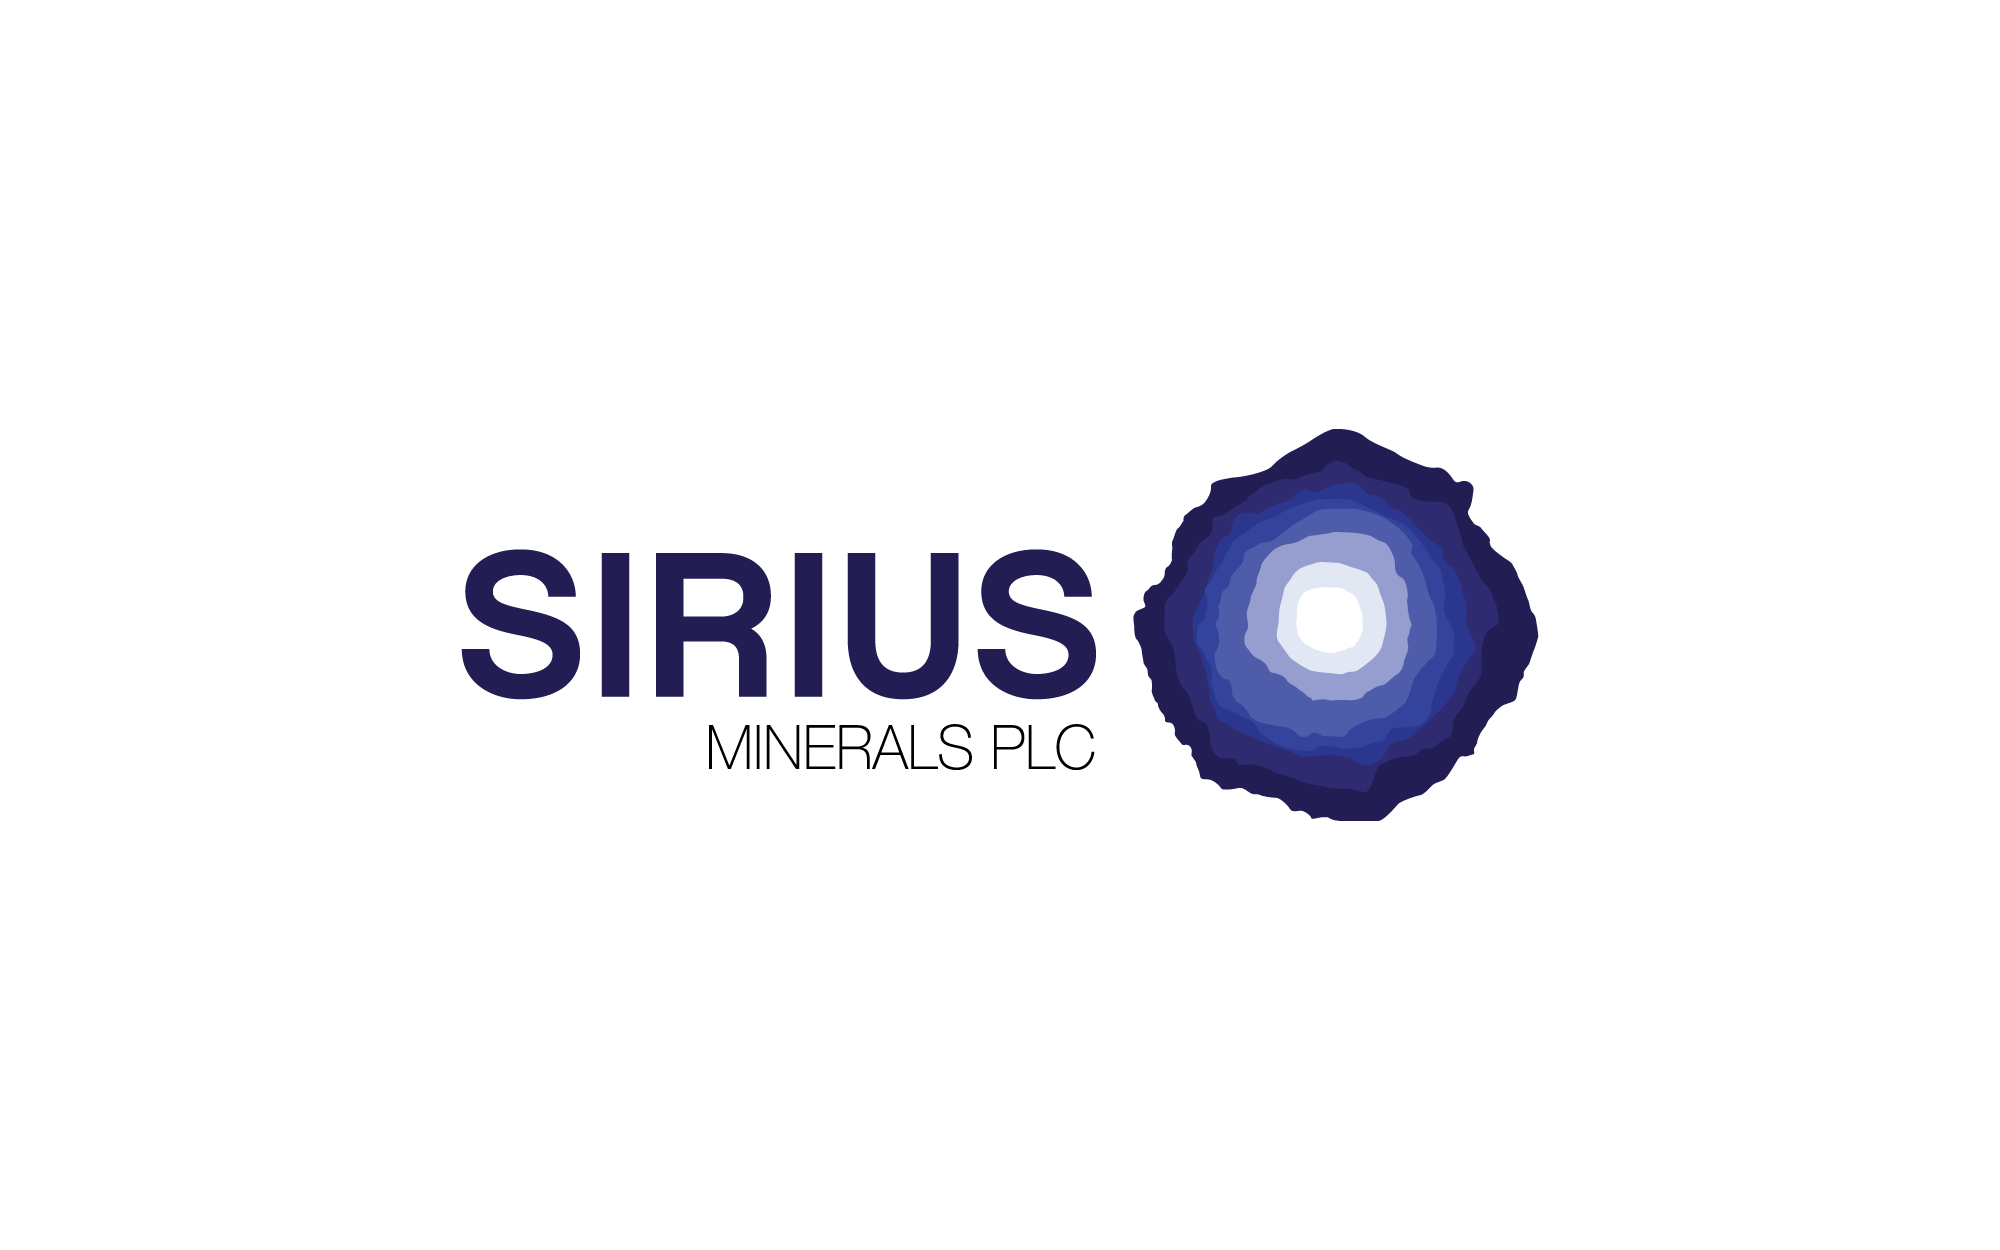 U.S. Minerals Company Logo - Sirius Minerals